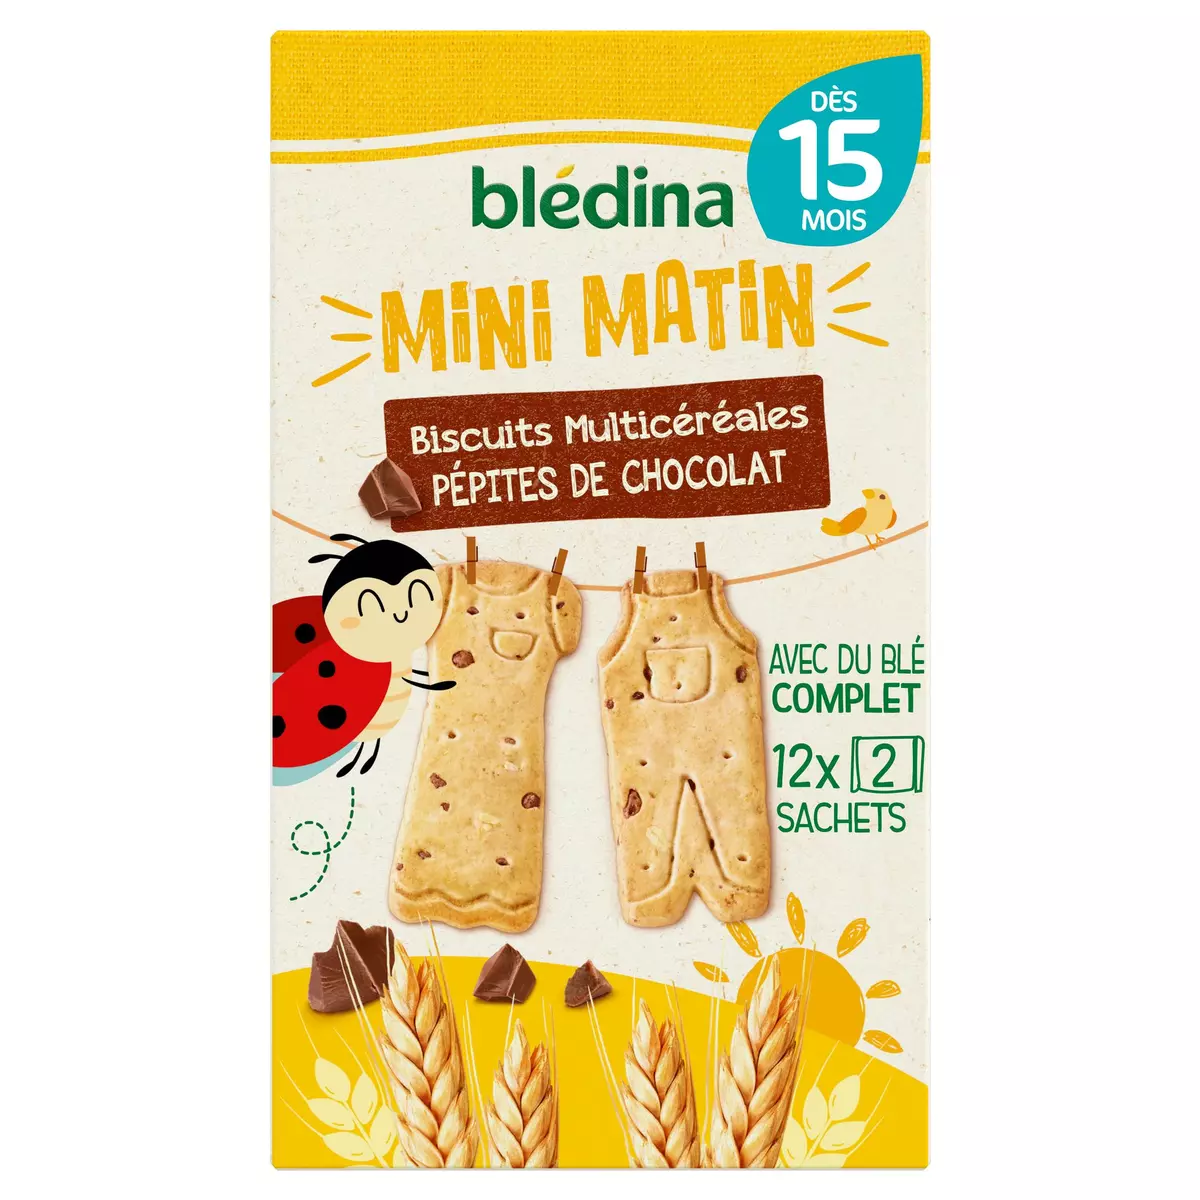 BLEDINA Mini matin biscuits multicéréales pépites de chocolat dès 15 mois 12 sachets 168g